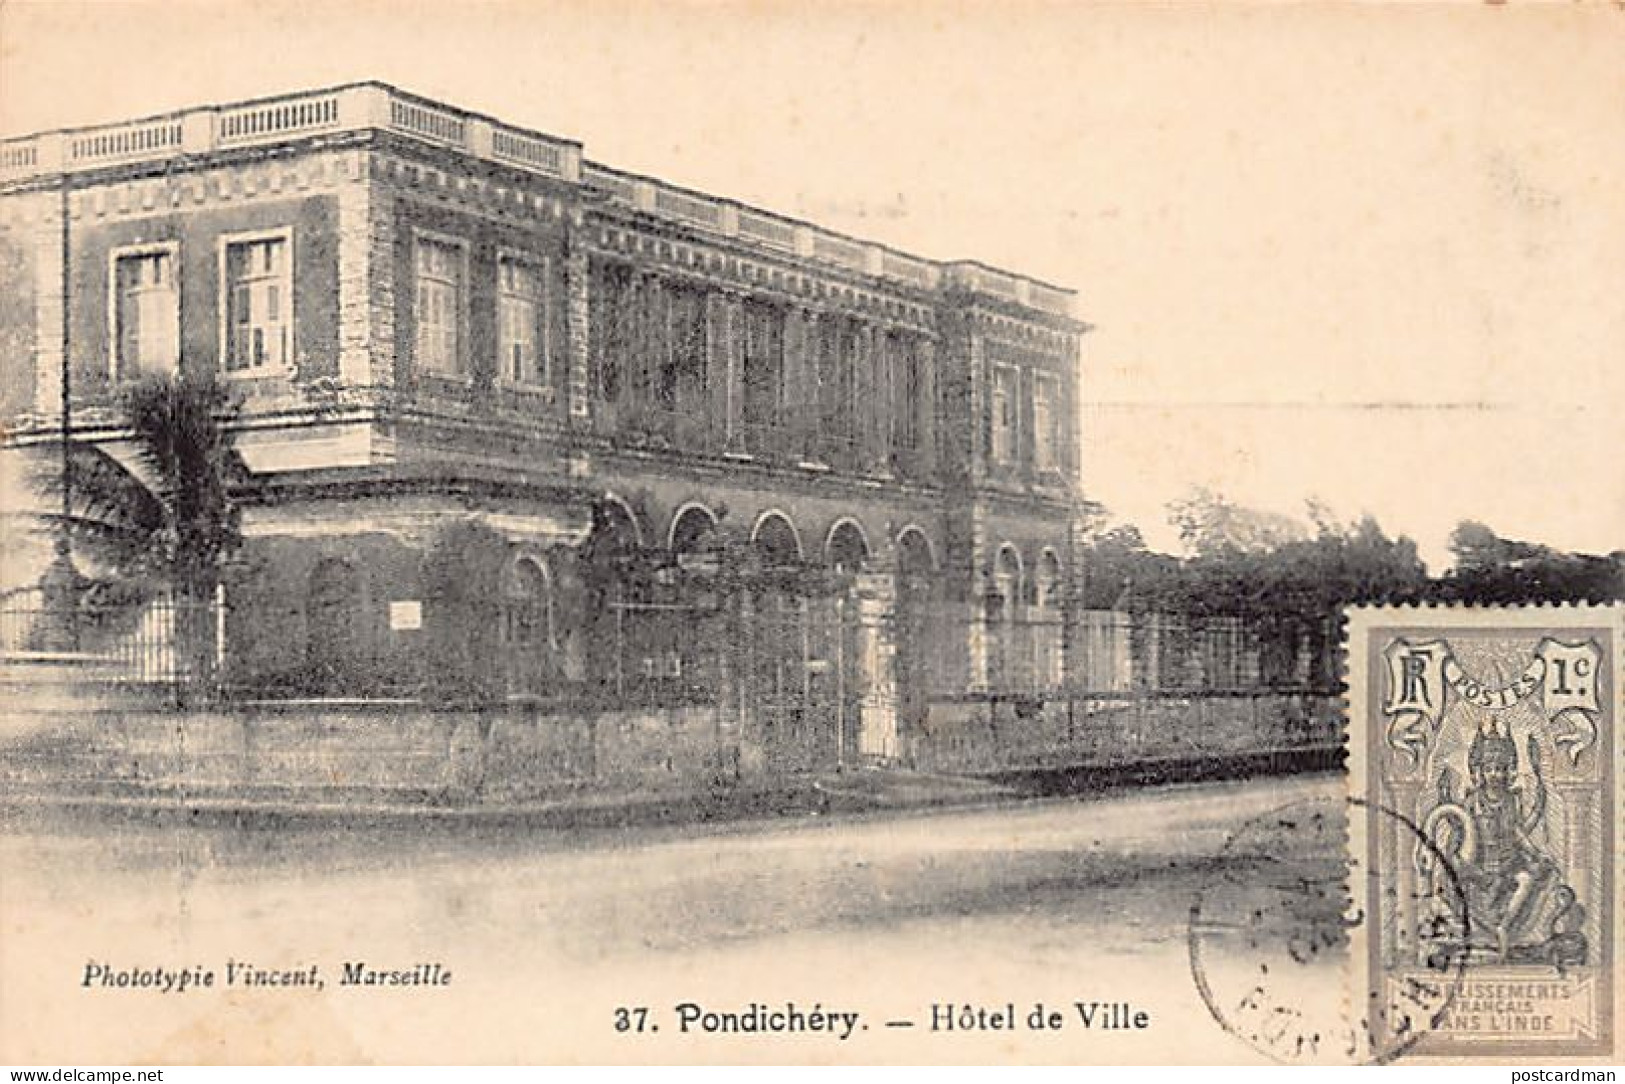 India - PONDICHERRY Pondichéry - Town-Hall - Publ. Vincent 37 - Inde